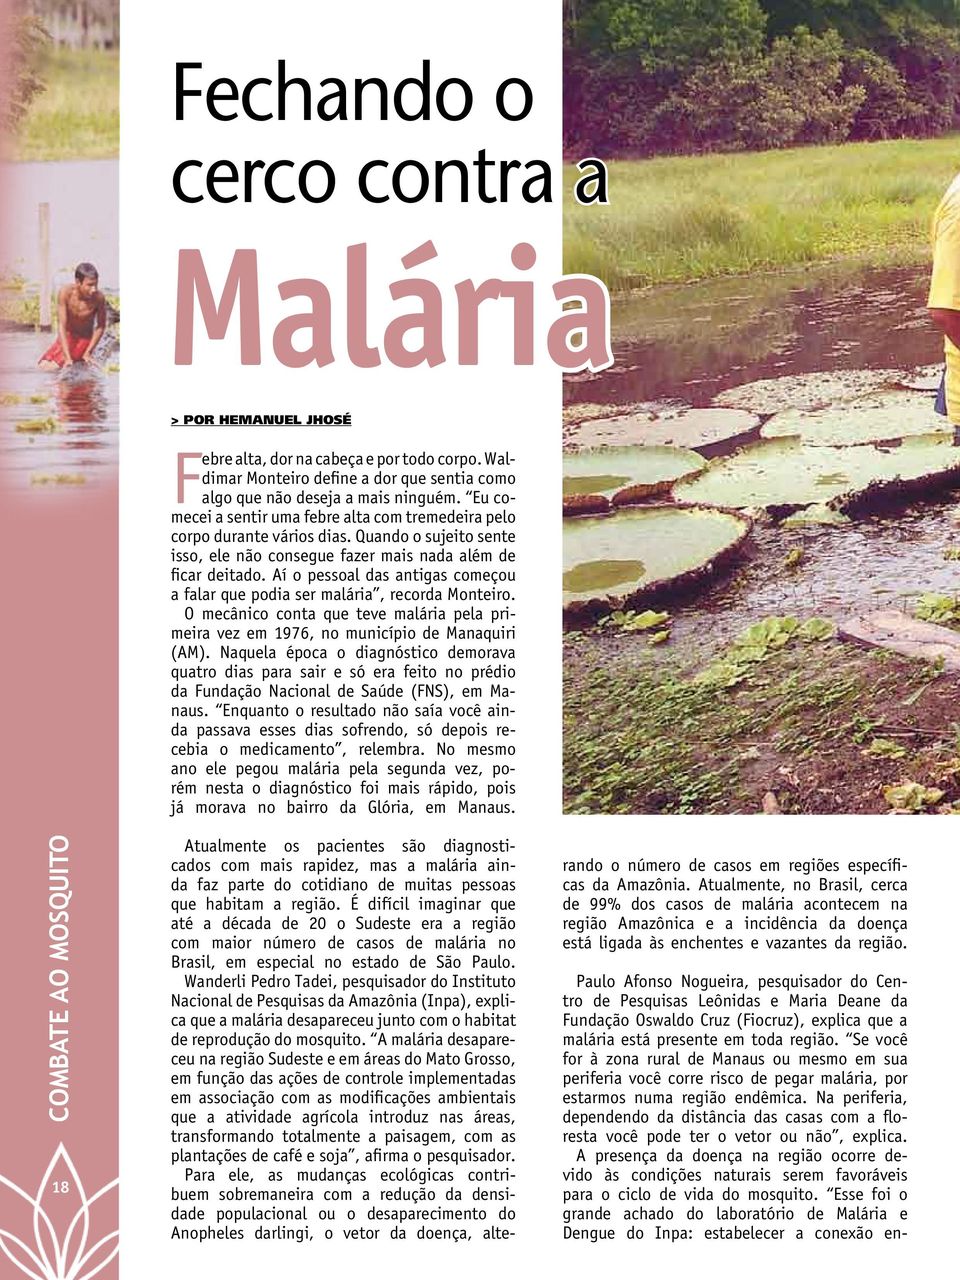 Aí o pessoal das antigas começou a falar que podia ser malária, recorda Monteiro. O mecânico conta que teve malária pela primeira vez em 1976, no município de Manaquiri (AM).